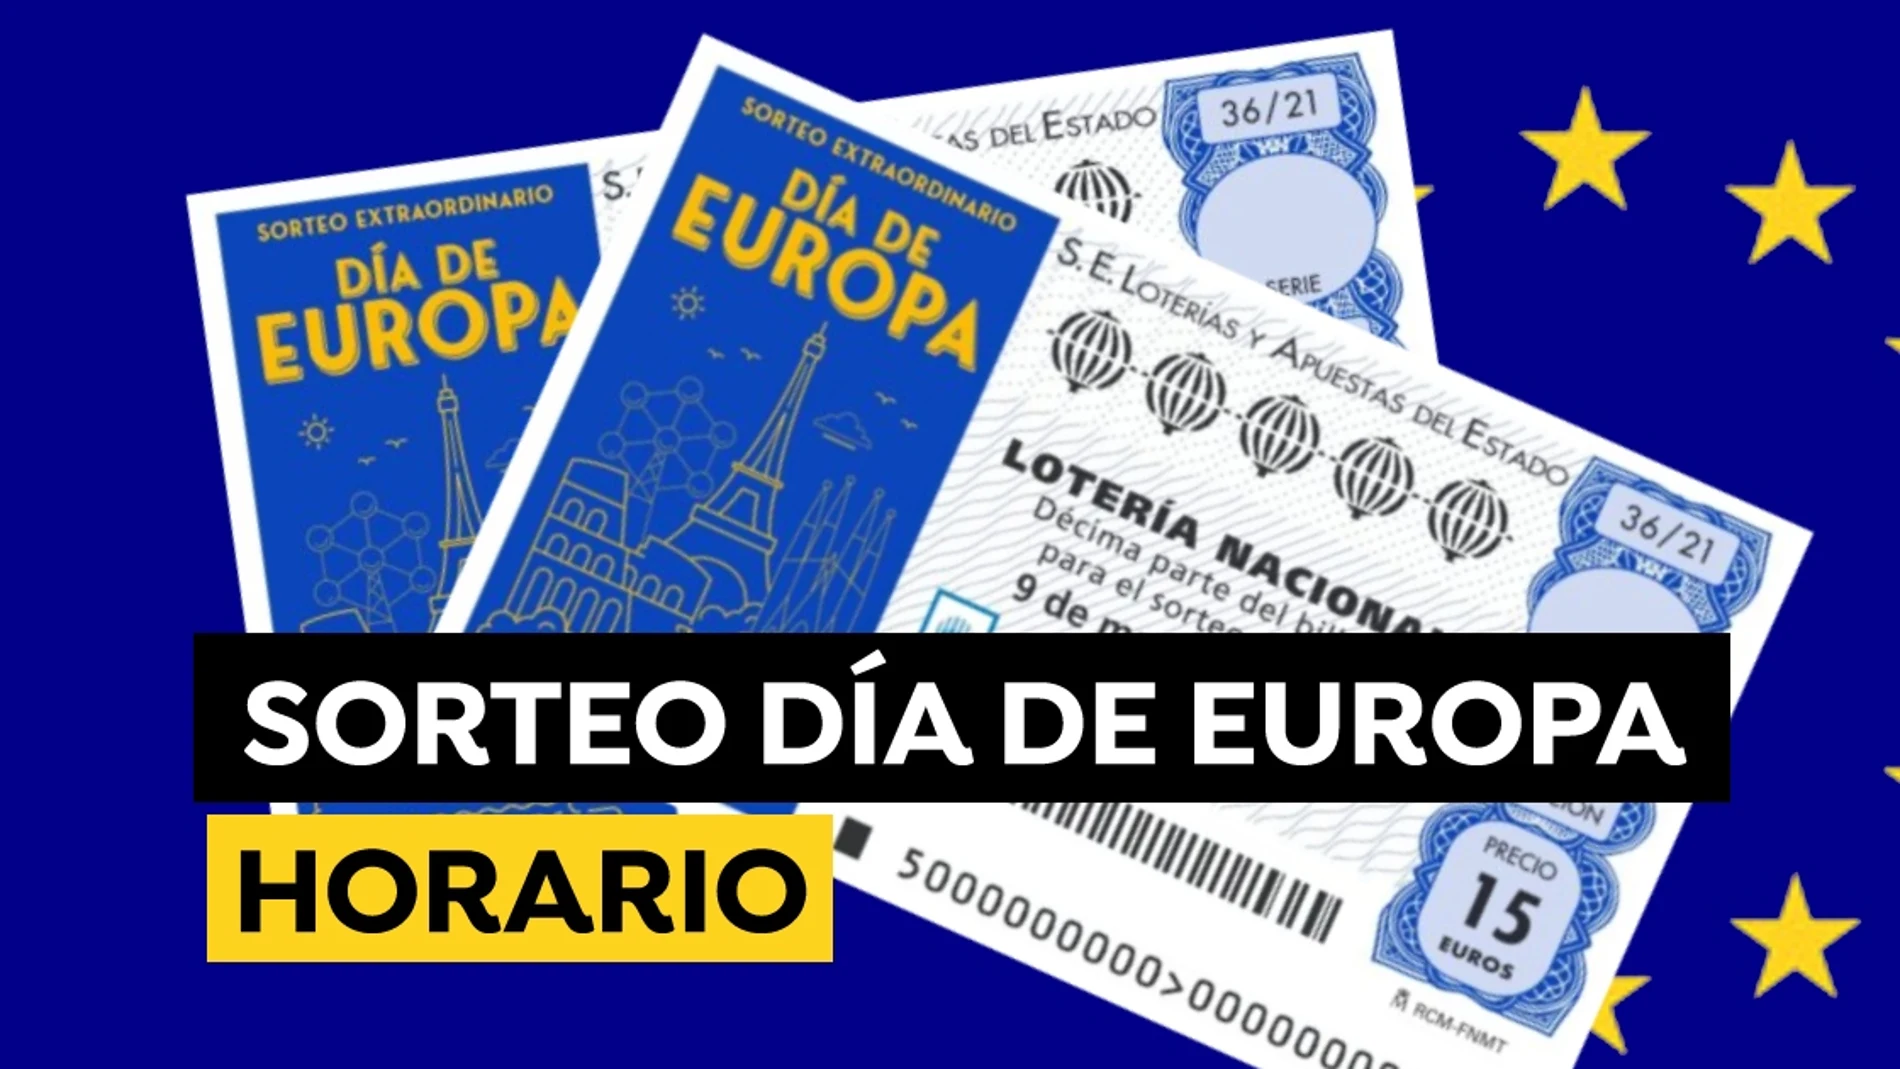  Sorteo Extraordinario del Día de Europa 2021: Horario y dónde ver el sorteo de la Lotería Nacional hoy 9 de mayo